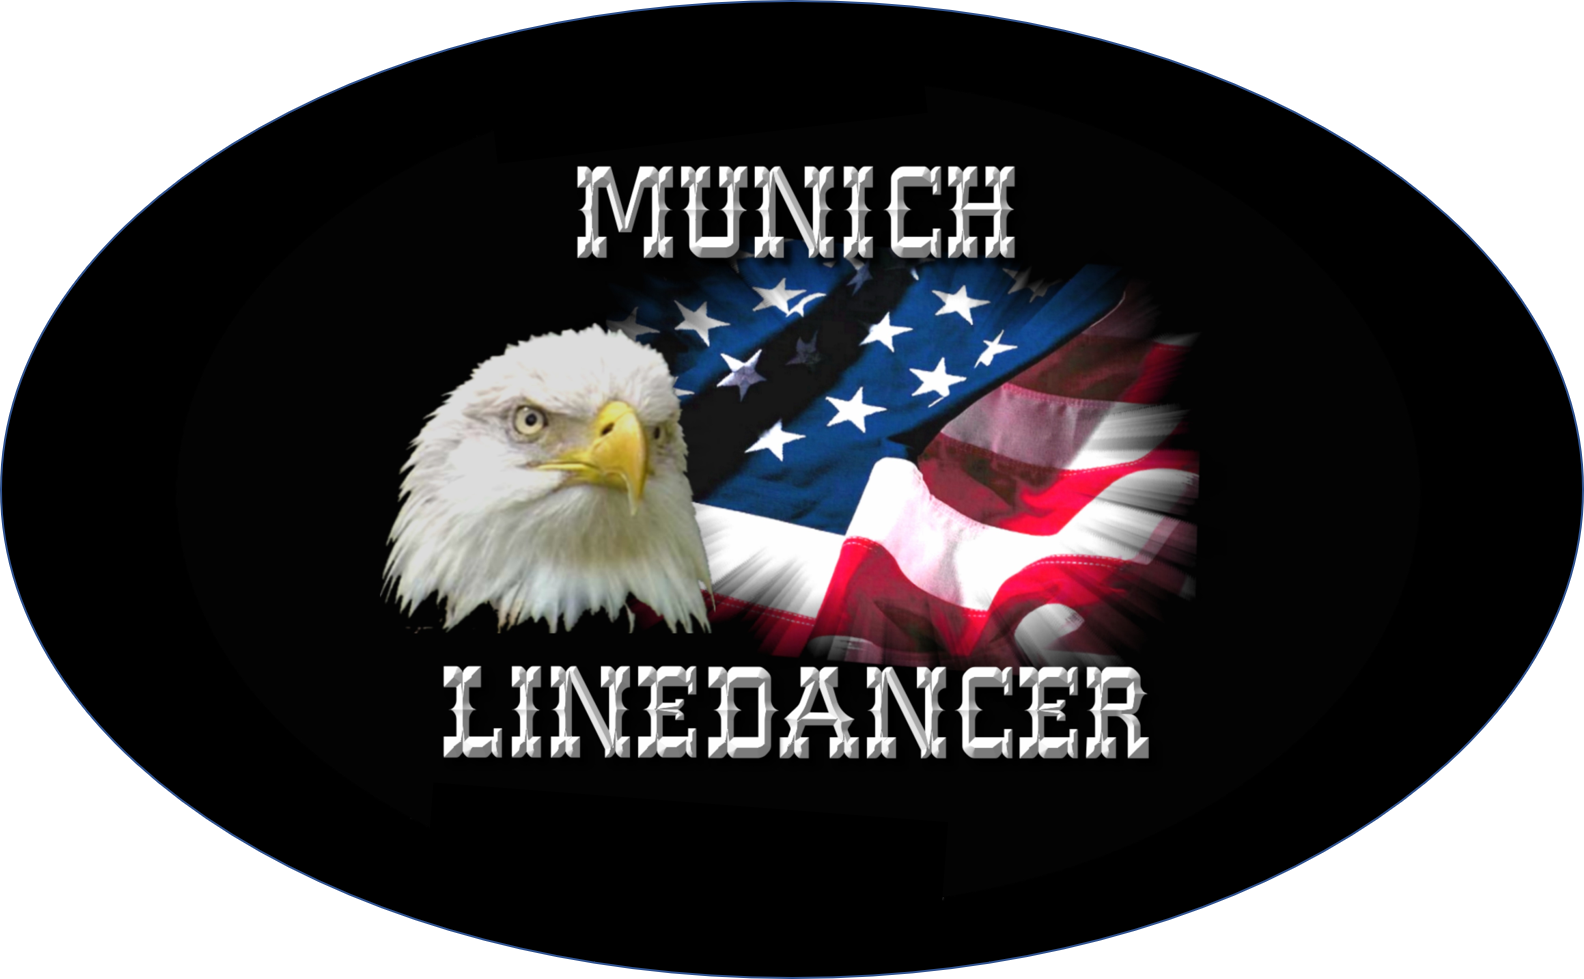 (c) Munich-linedancer.de